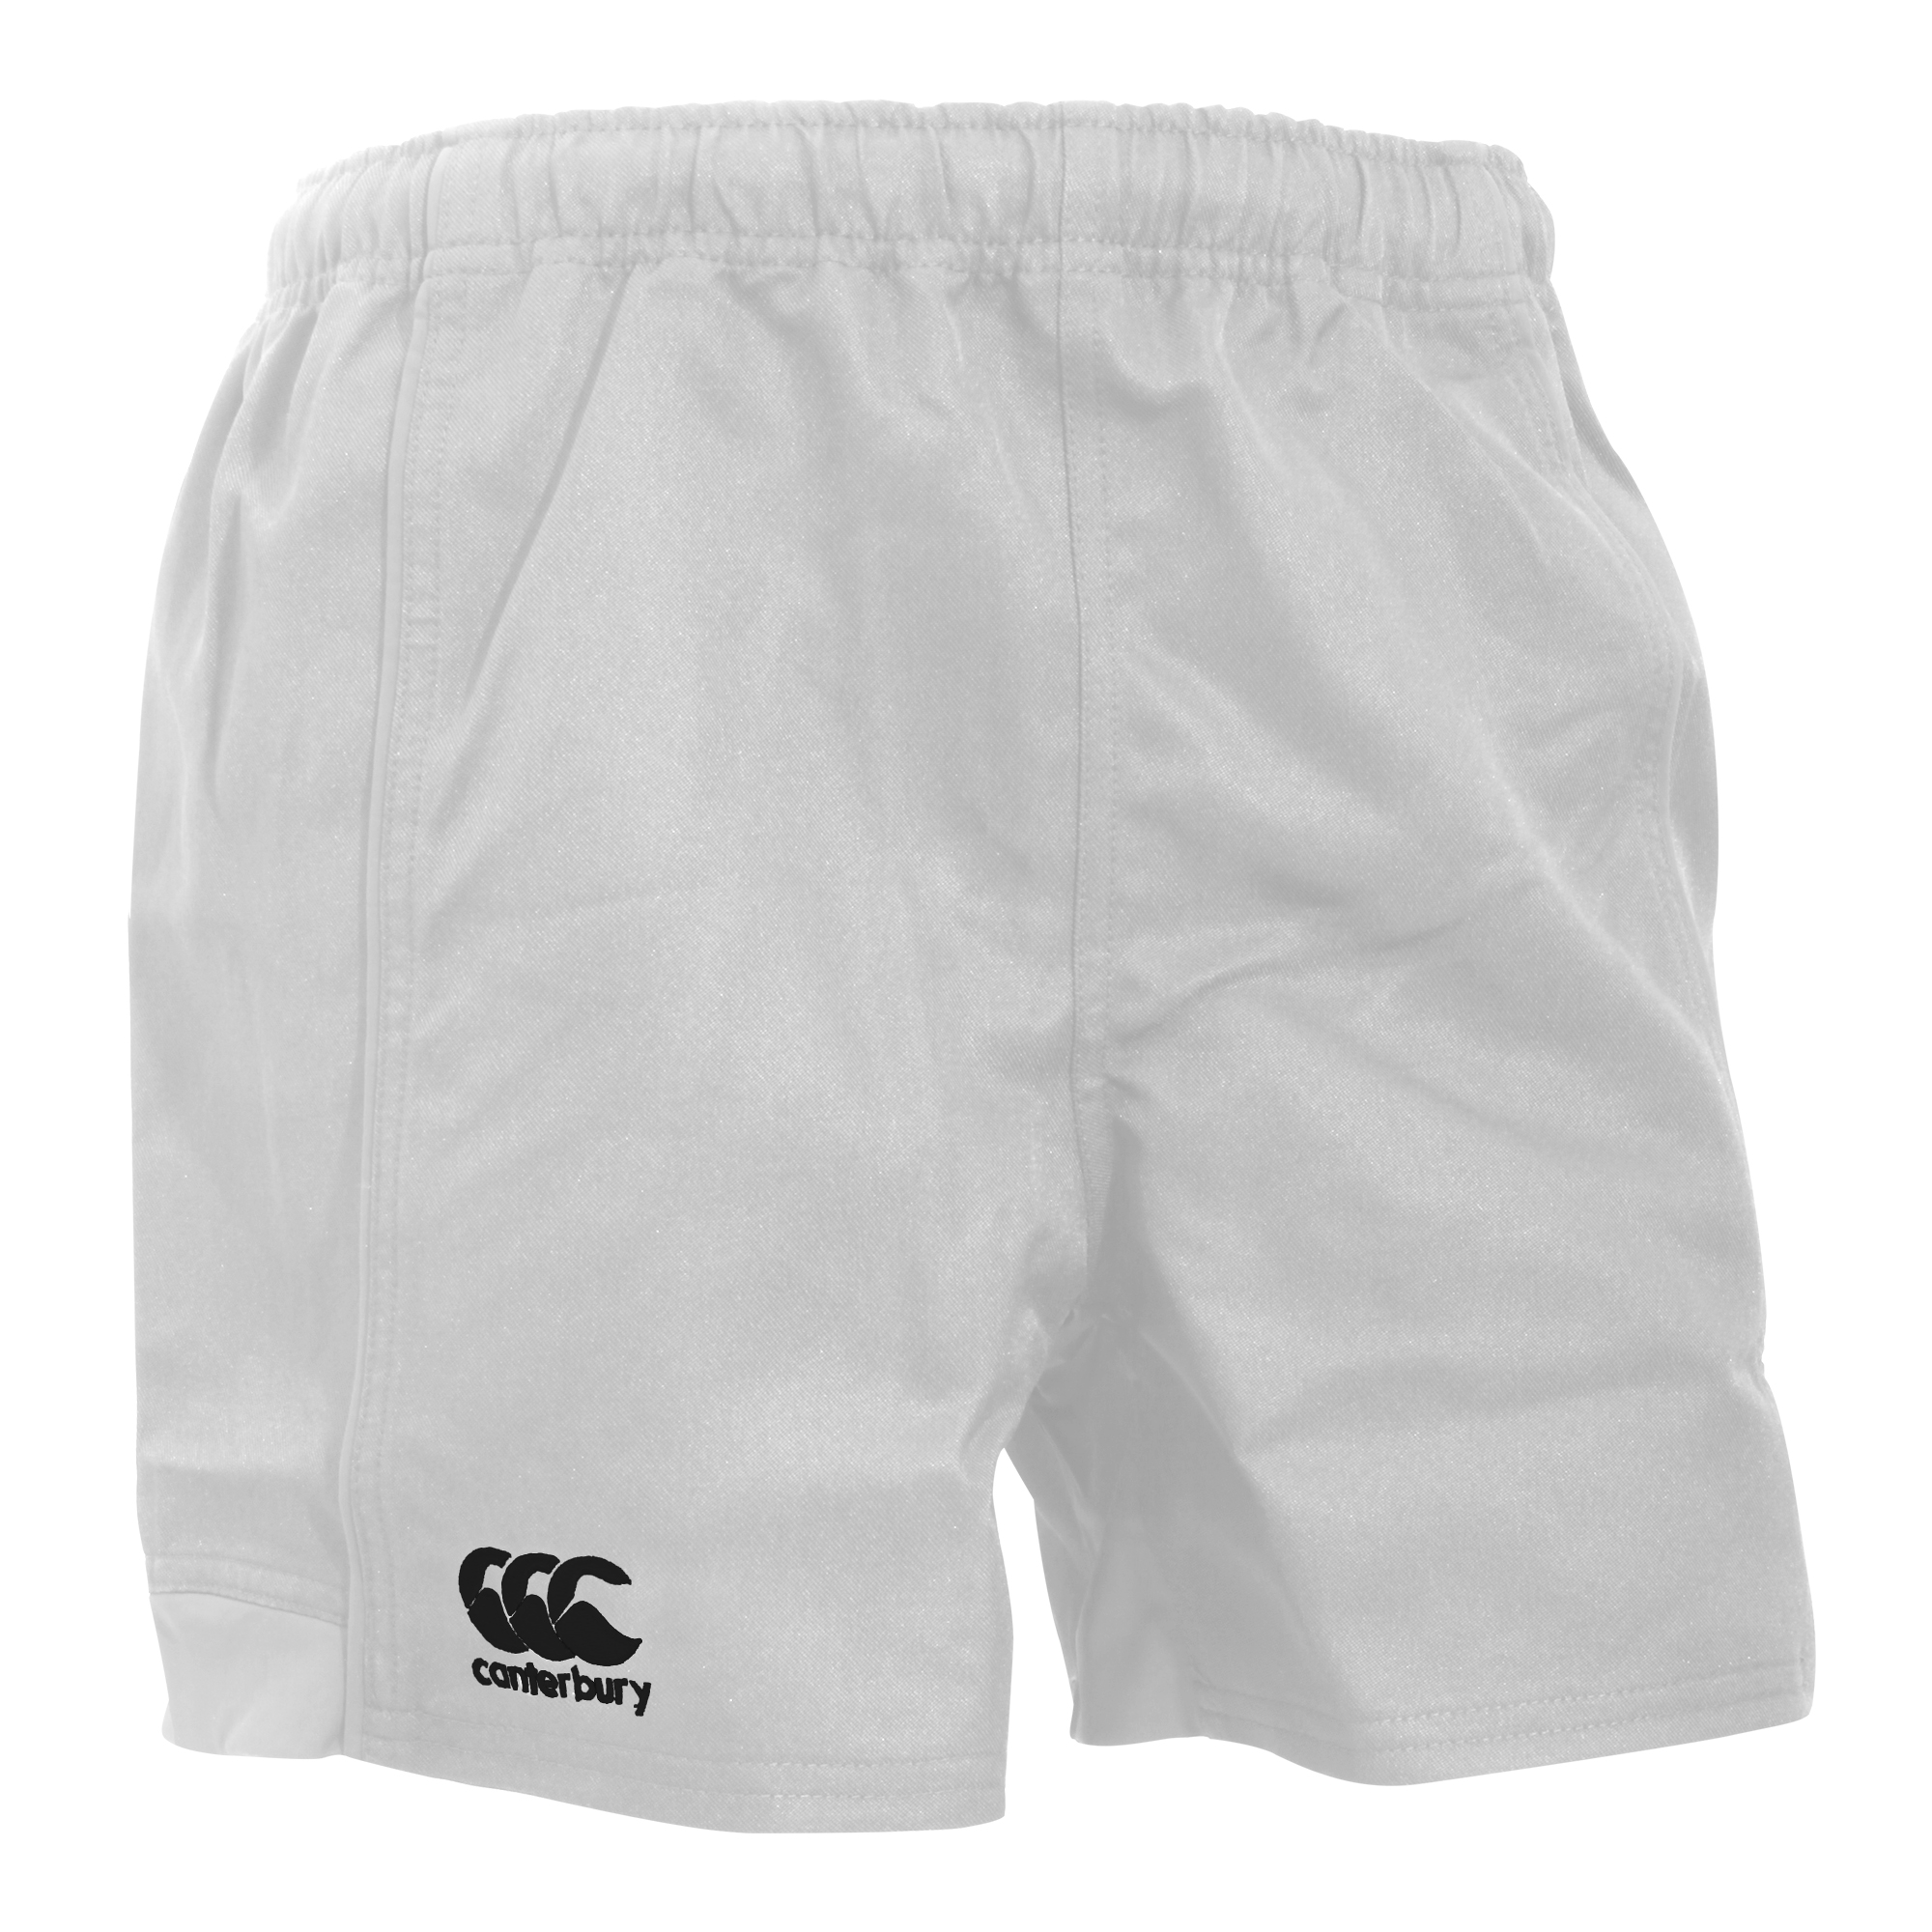 Pantalones Cortos De Deportes Elásticos Canterbury Advantage - blanco - 